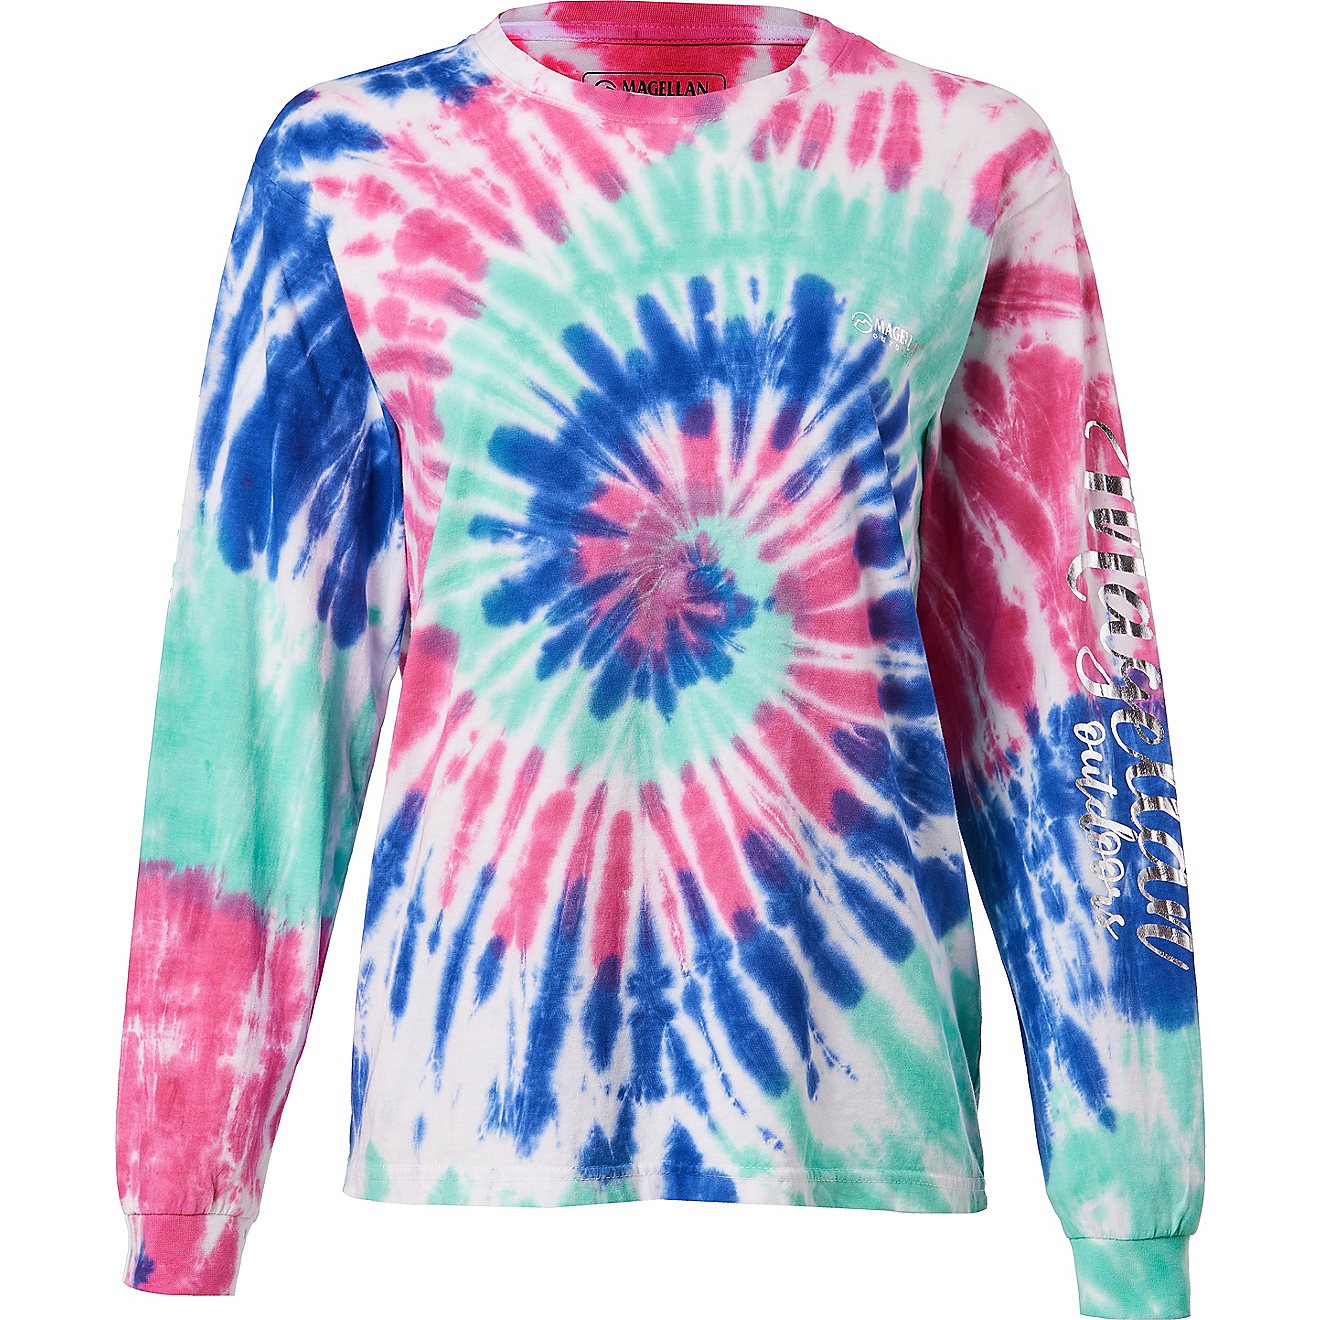 Magellan Outdoors Girls' Tie Dye Logo Long Sleeve Crew Shirt                                                                     - view number 1